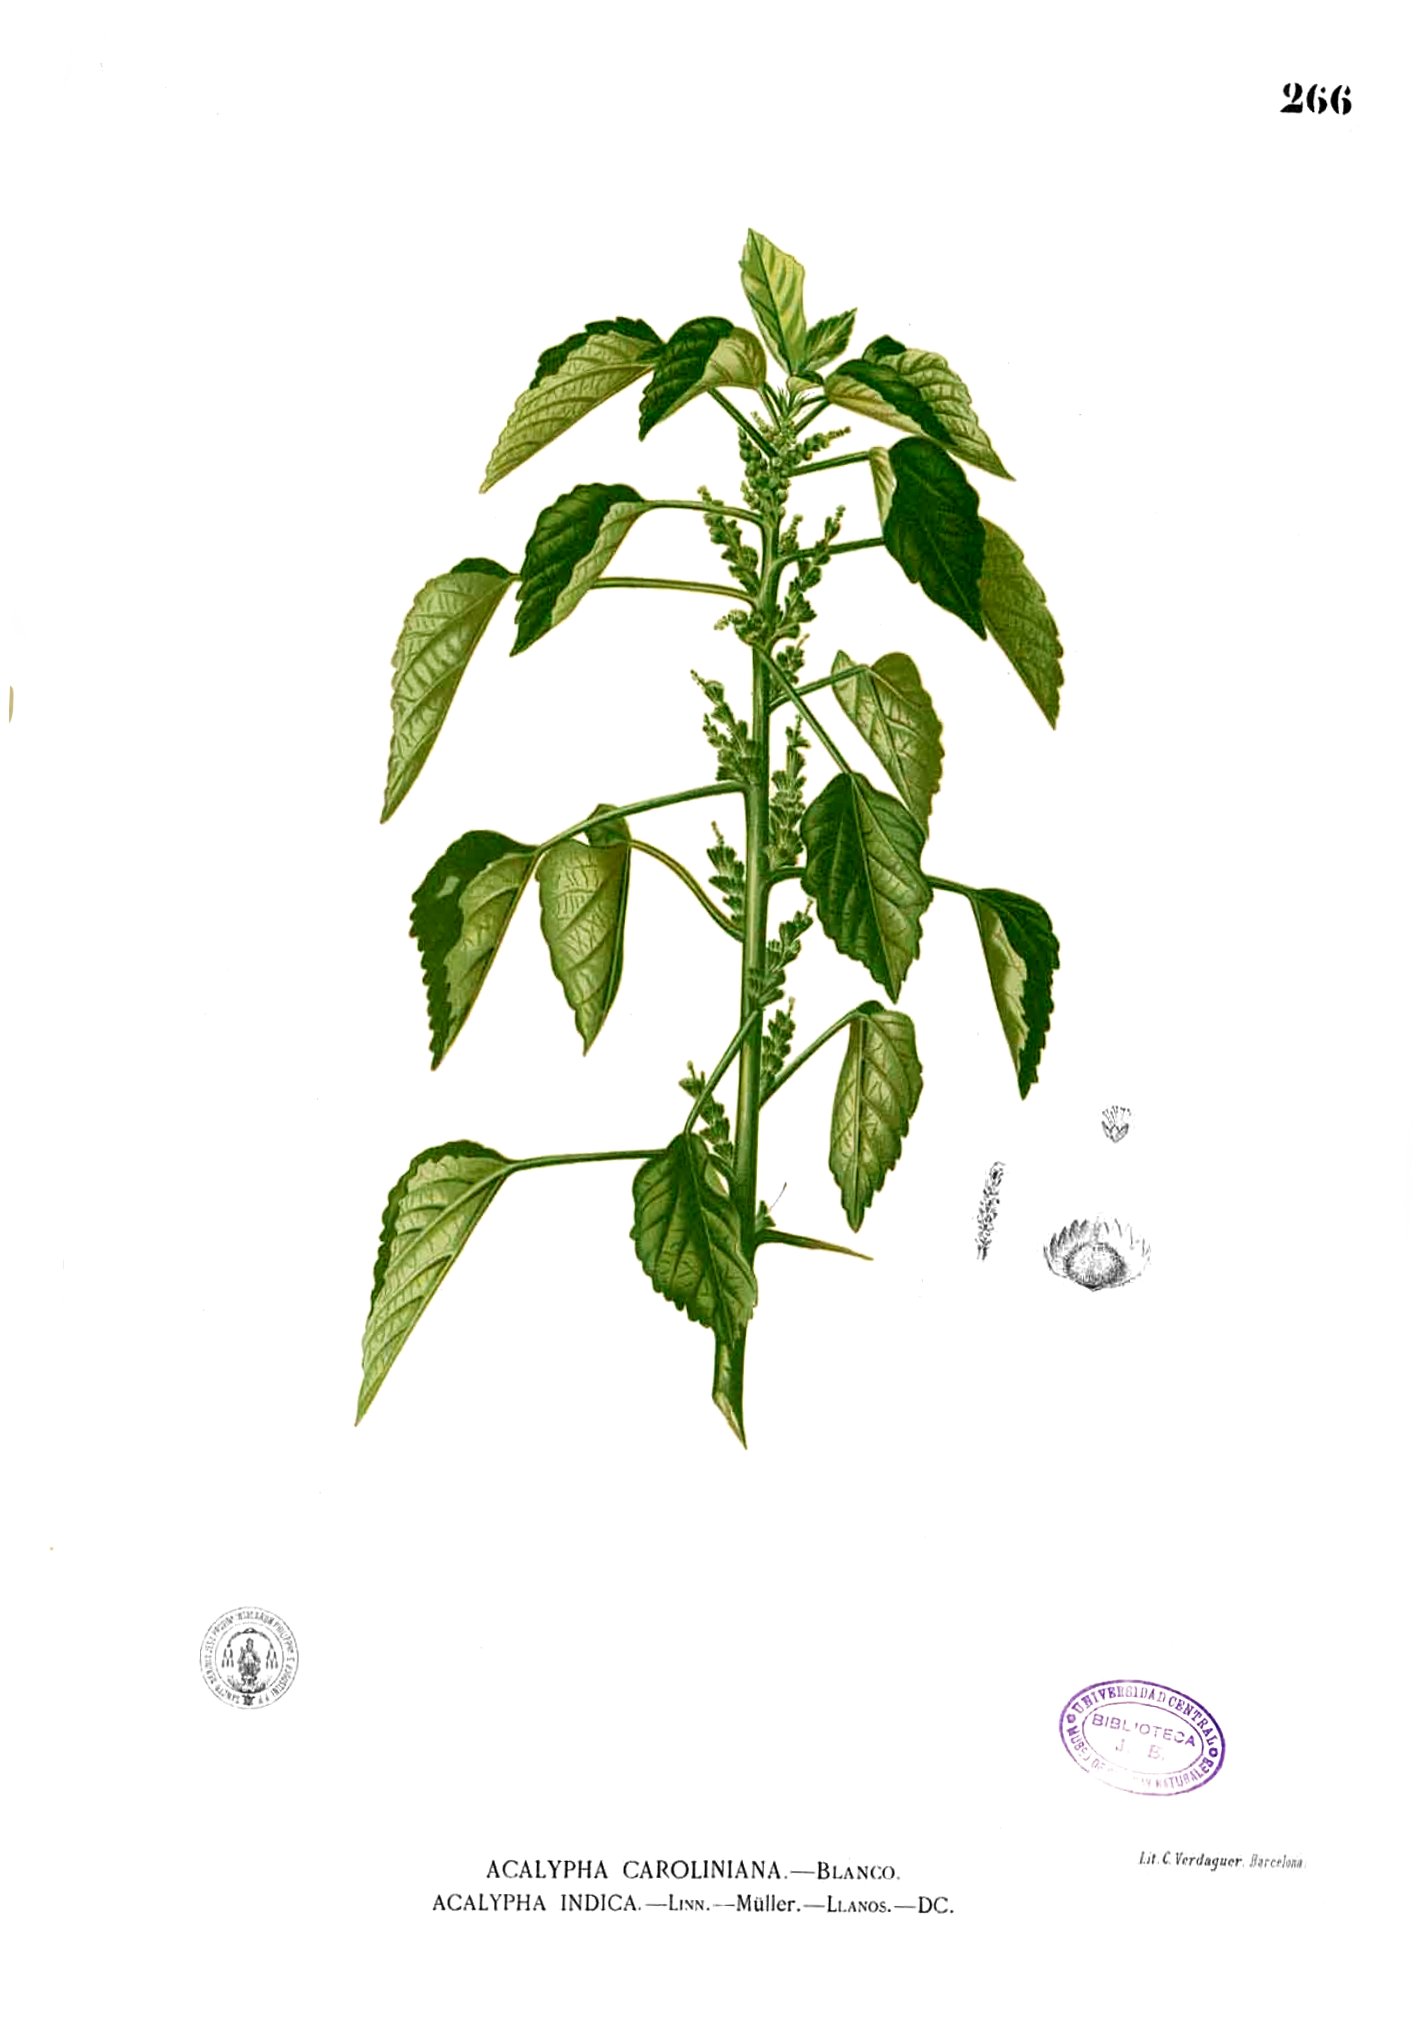 Acalypha indica Blanco2.266